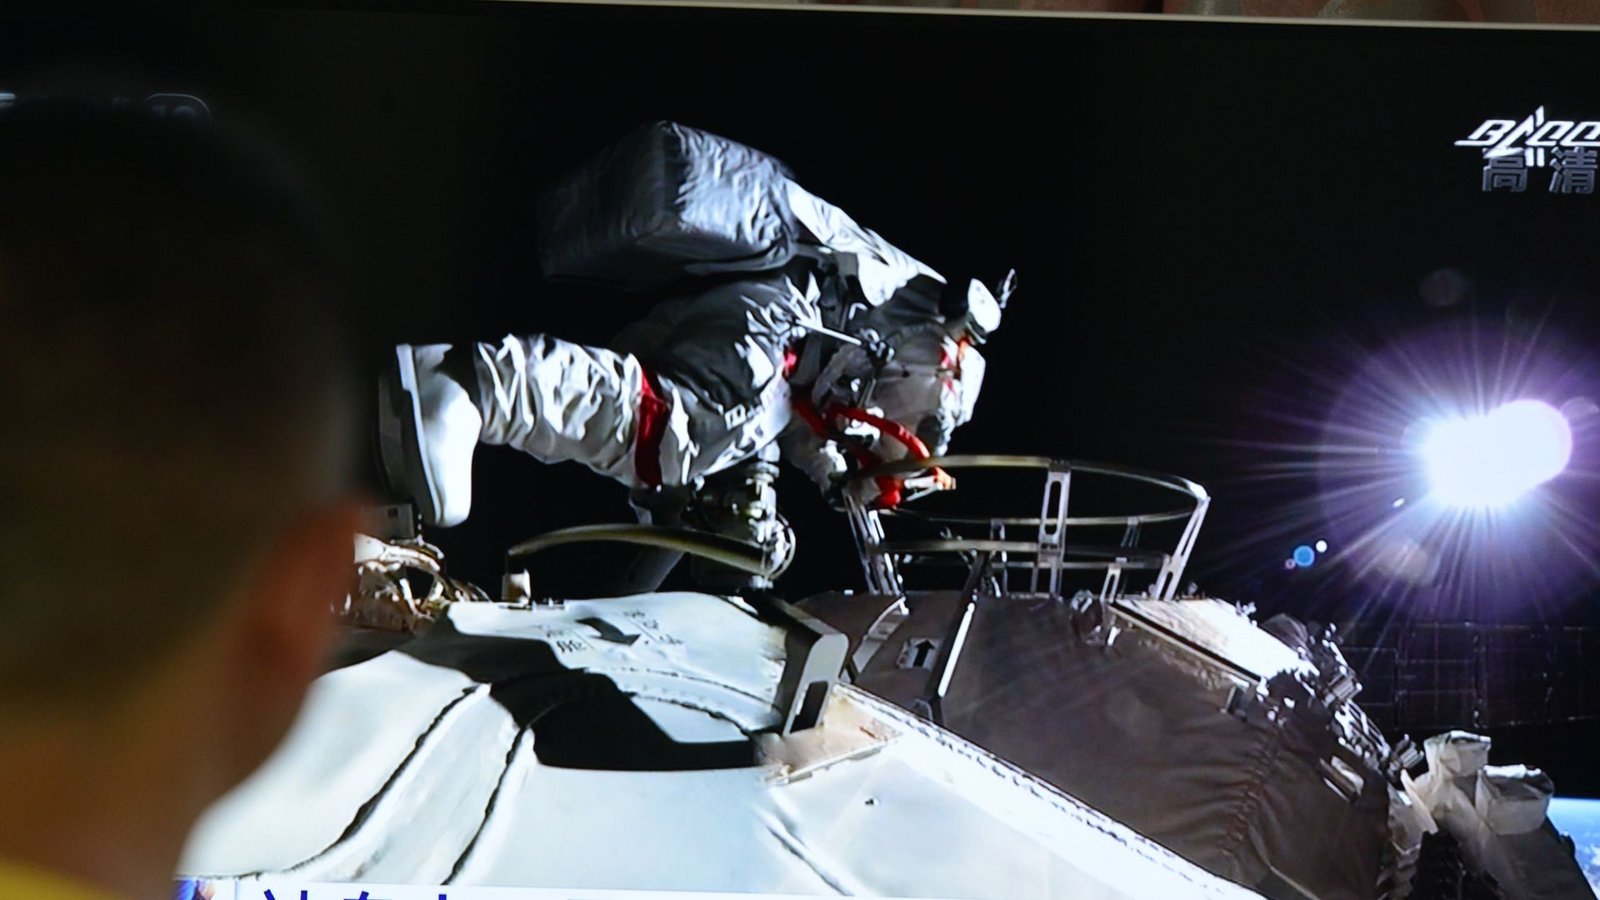 Ein Mann verfolgt vor dem Fernseher die Live-Übertragung eines Außeneinsatzes an der Raumstation "Tiangong" (Archivbild).Foto: Sheldon cooper/SOPA Images via ZUMA Wire/dpa